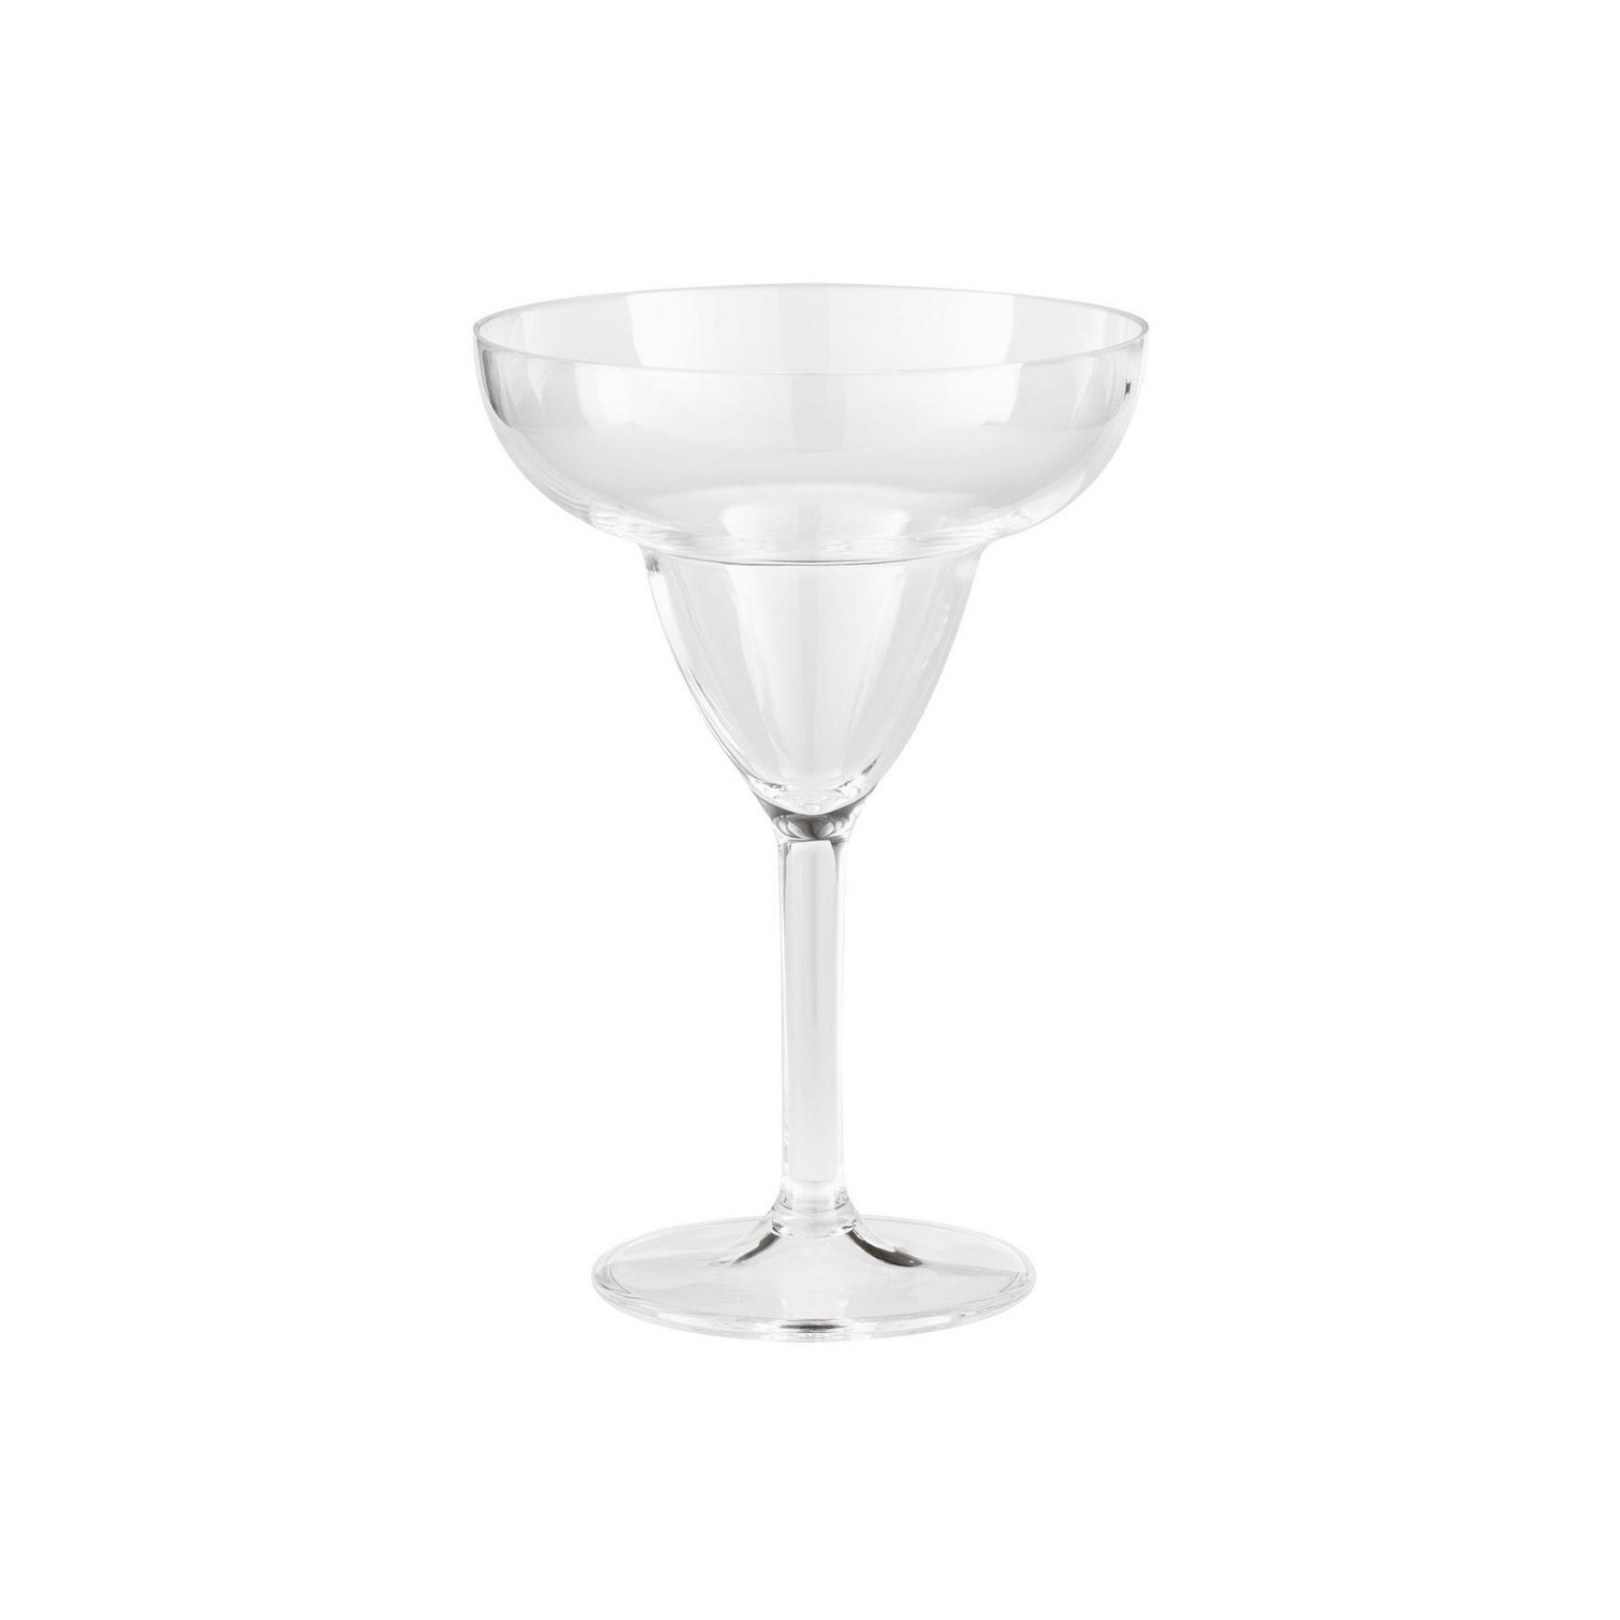 Margarita glass 12 cm Paderno Sambonet